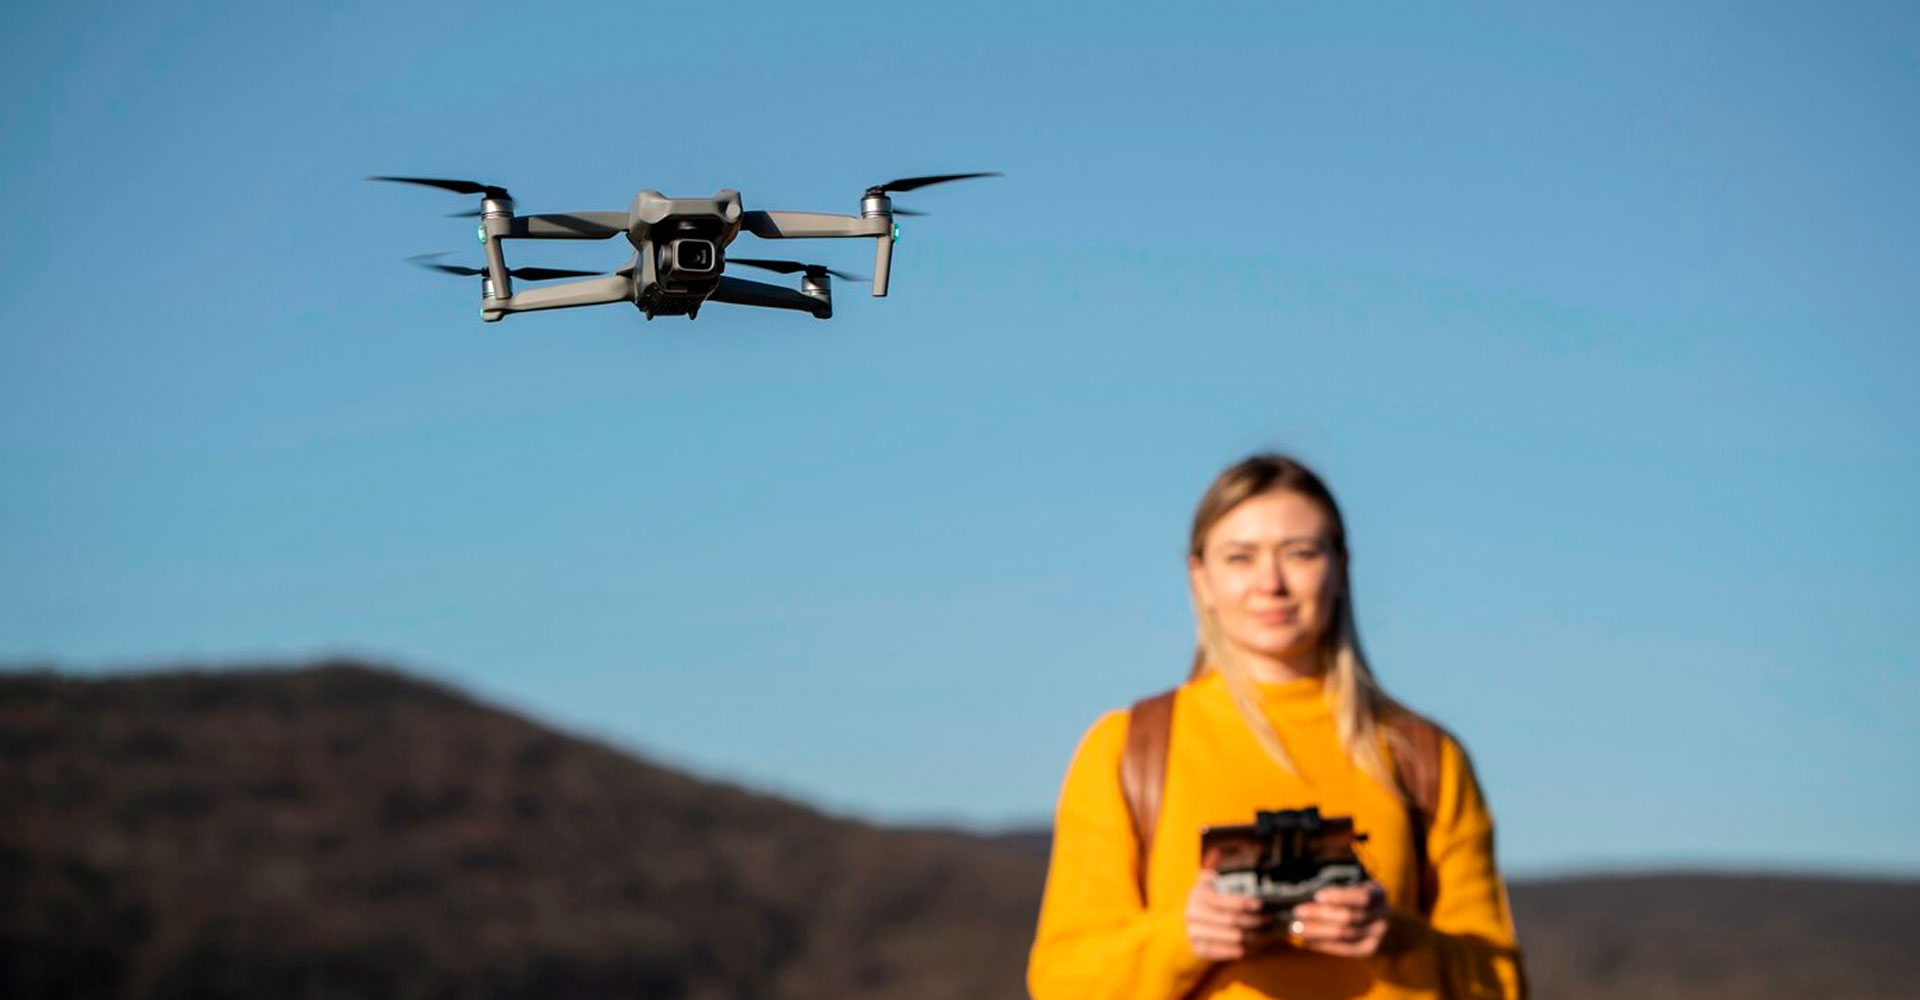 La importancia de la gestoria aeronautica en la formacion de pilotos de drones